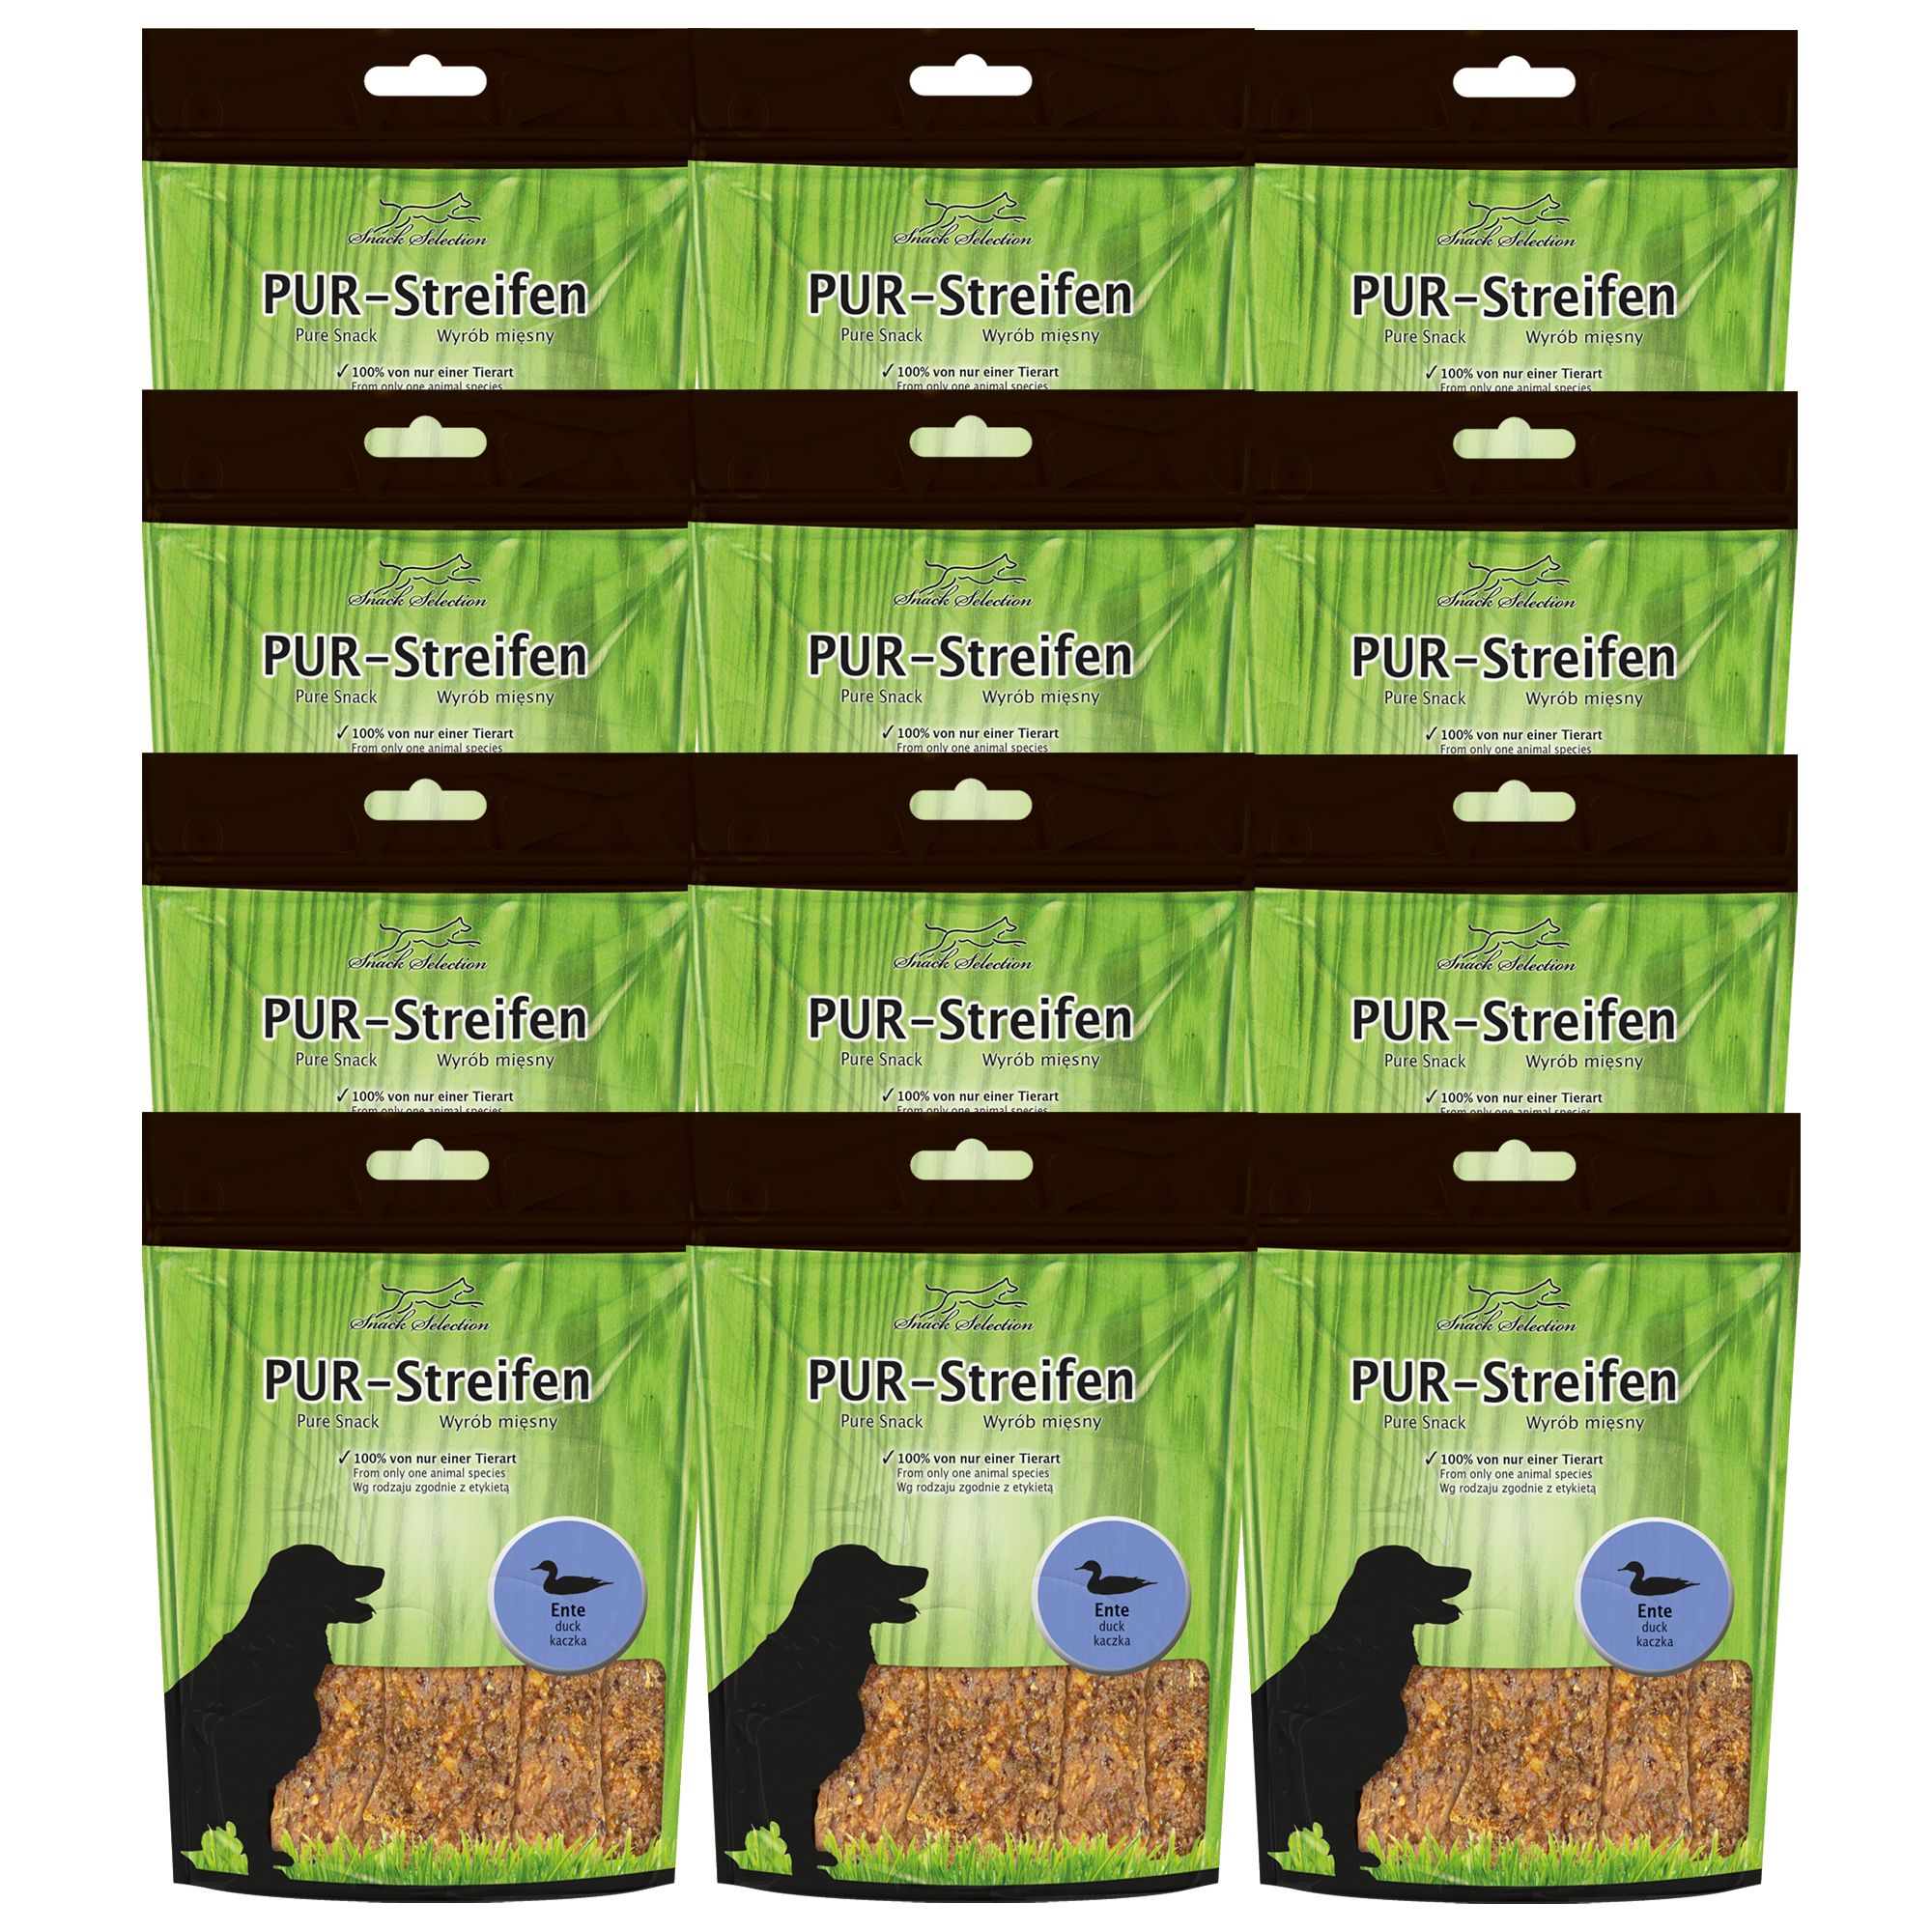 Schecker PUR Streifen Ente - Kausnack für Hunde von einer Tierart - getreidefrei